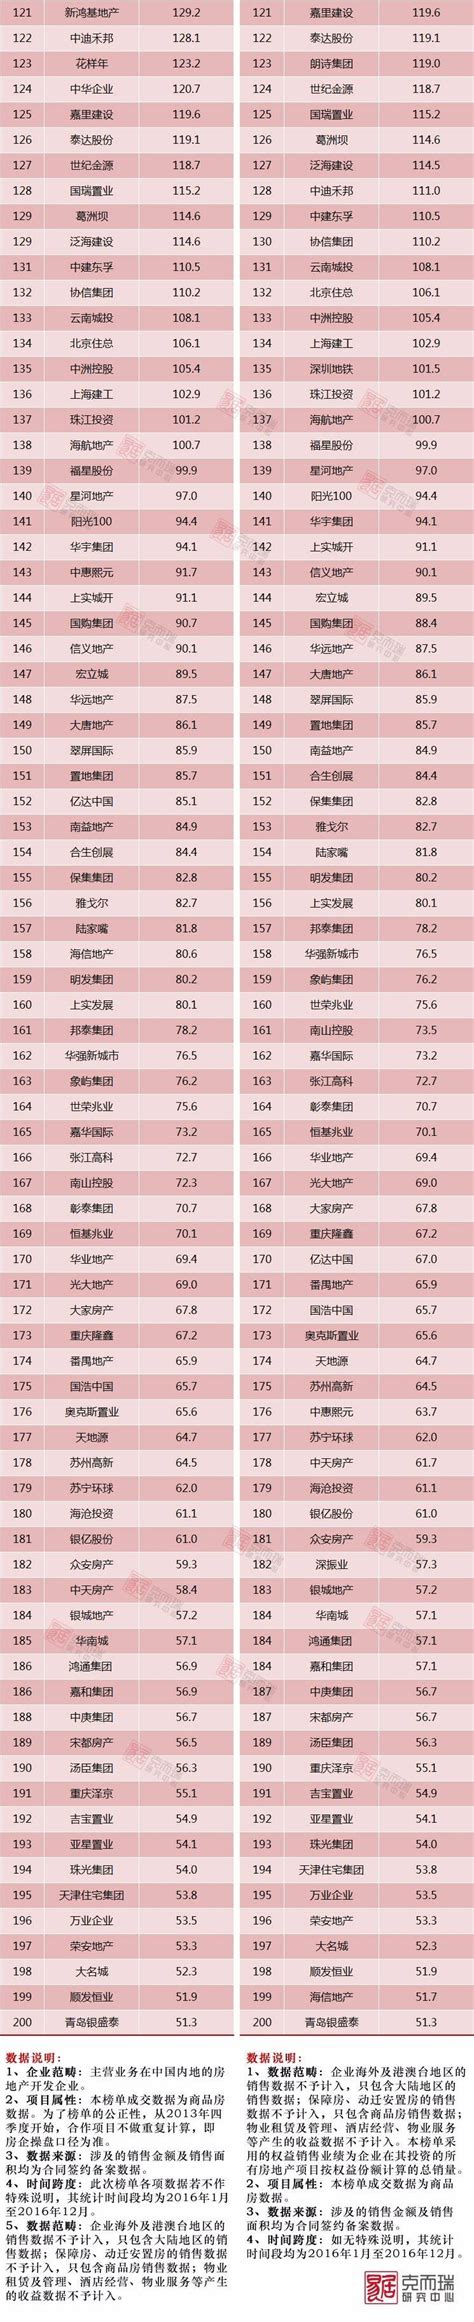 2013年中国房地产企业销售排行榜_新浪乐居_新浪网